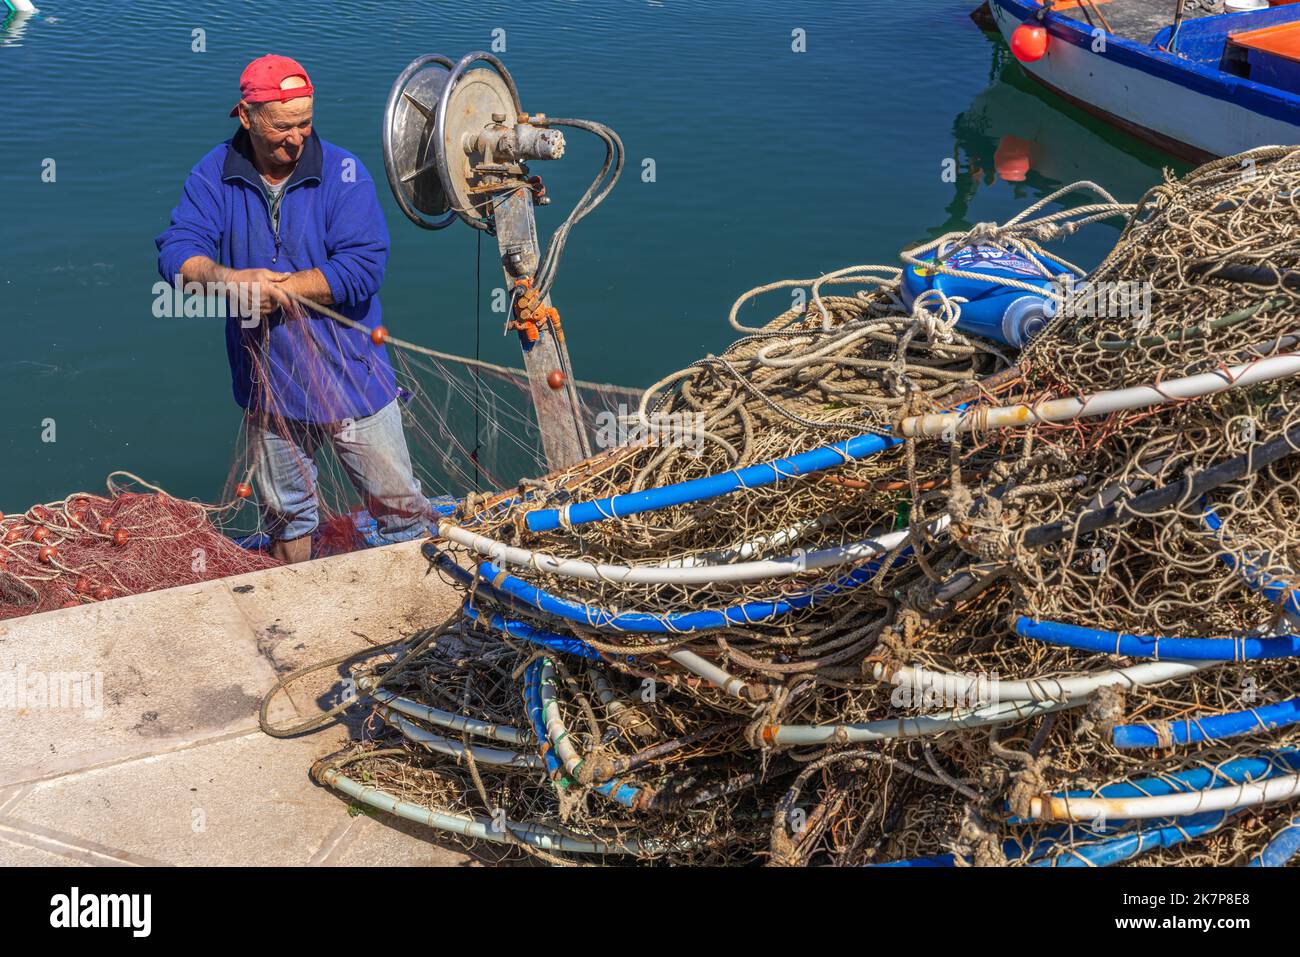 Un pêcheur répare et fixe ses filets après avoir pêché dans la mer Adriatique. Puglia, Italie, Europe Banque D'Images